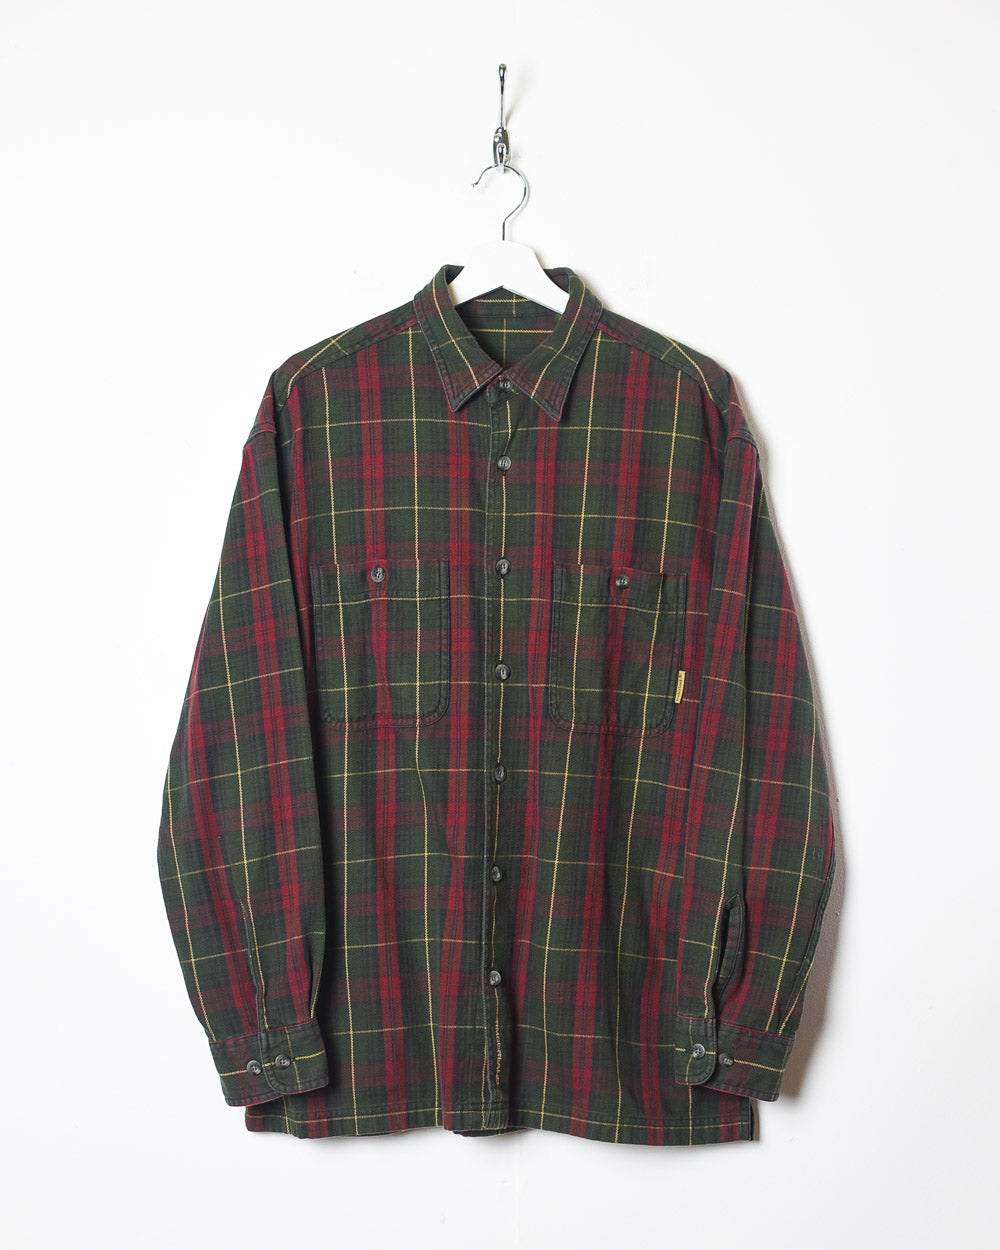 Green Timberland Flannel Shirt - Medium